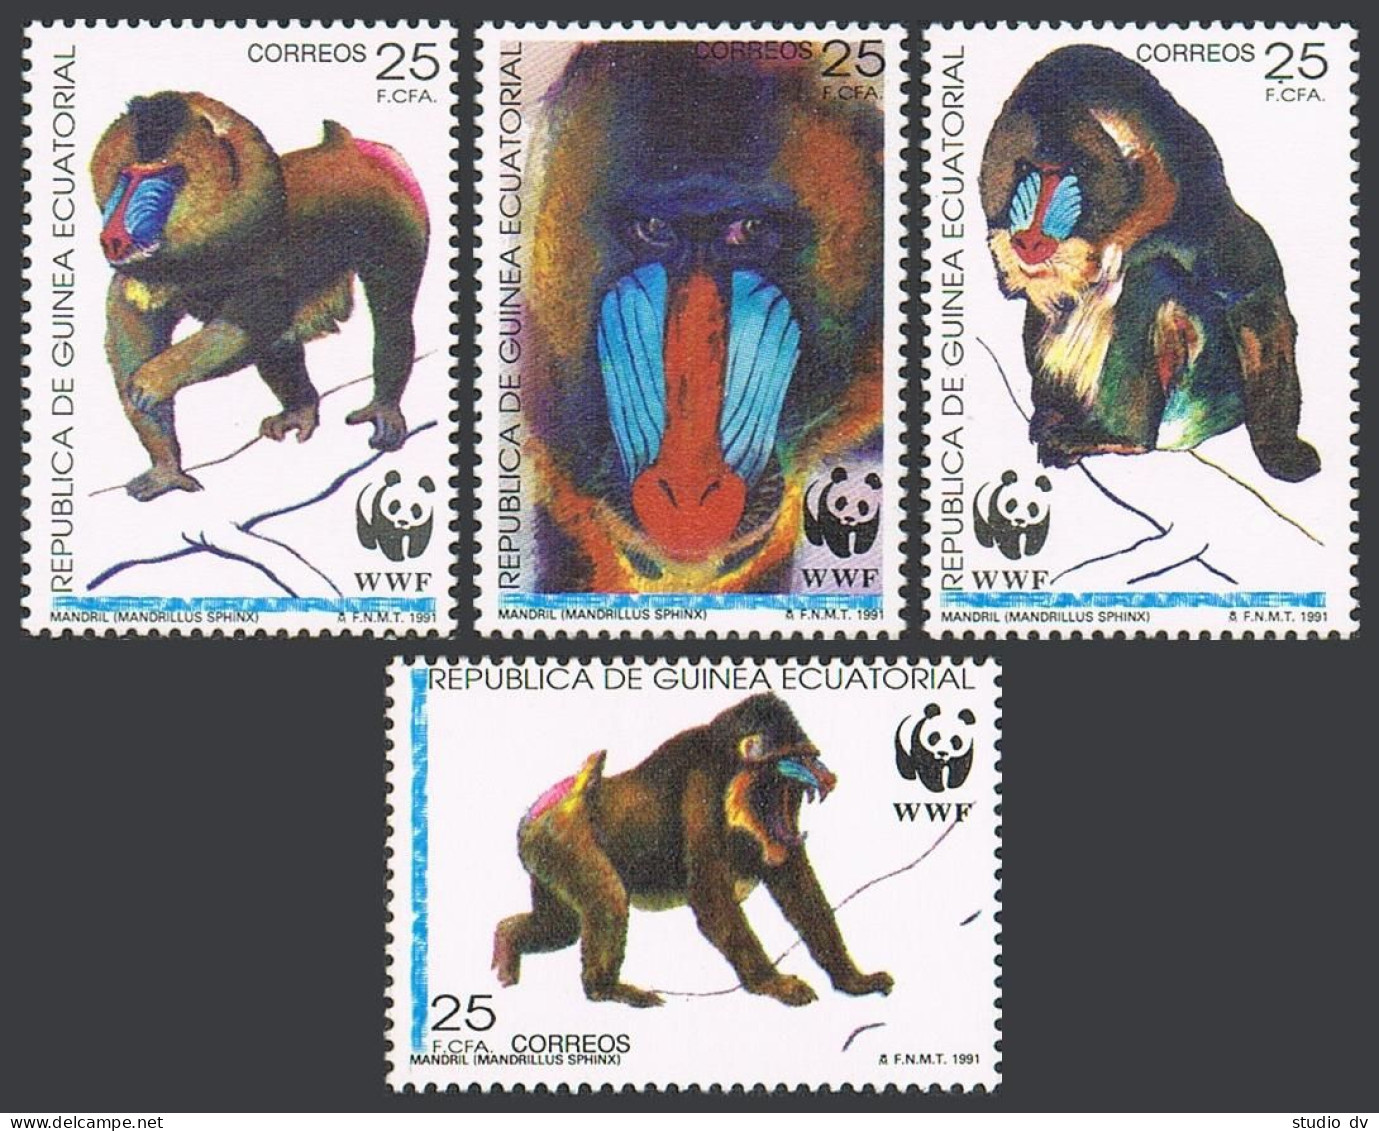 Equatorial Guinea 159-162, Hinged. Michel 1731-1734. WWF-1991. Madrillus Sphinx. - Guinee (1958-...)